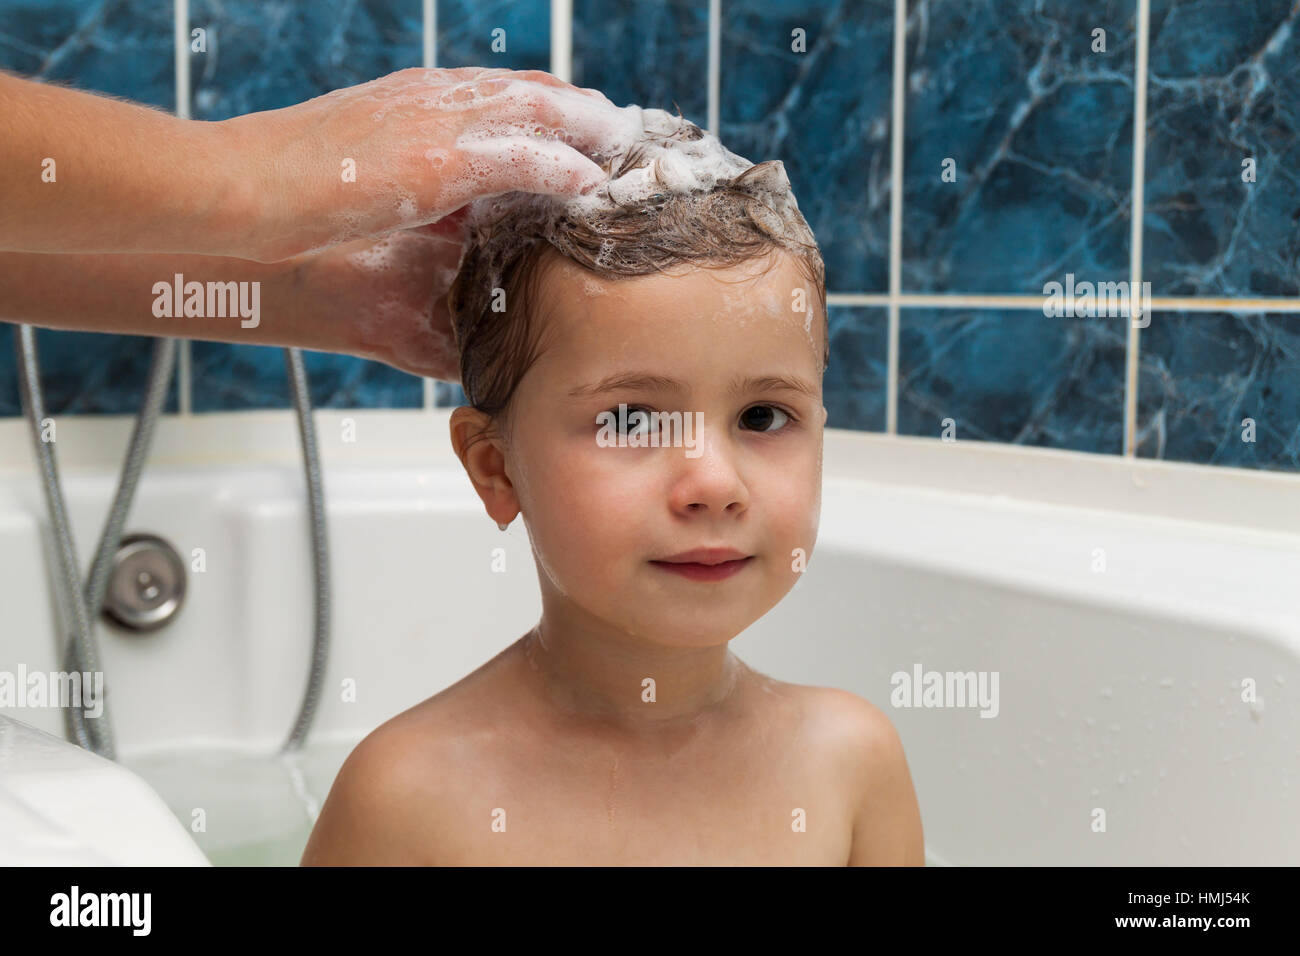 Моет сына в душе. Девочки в ванной мытье головы. Мальчик моется с девочкой. Ребенок моет волосы. Мальчик моет голову.